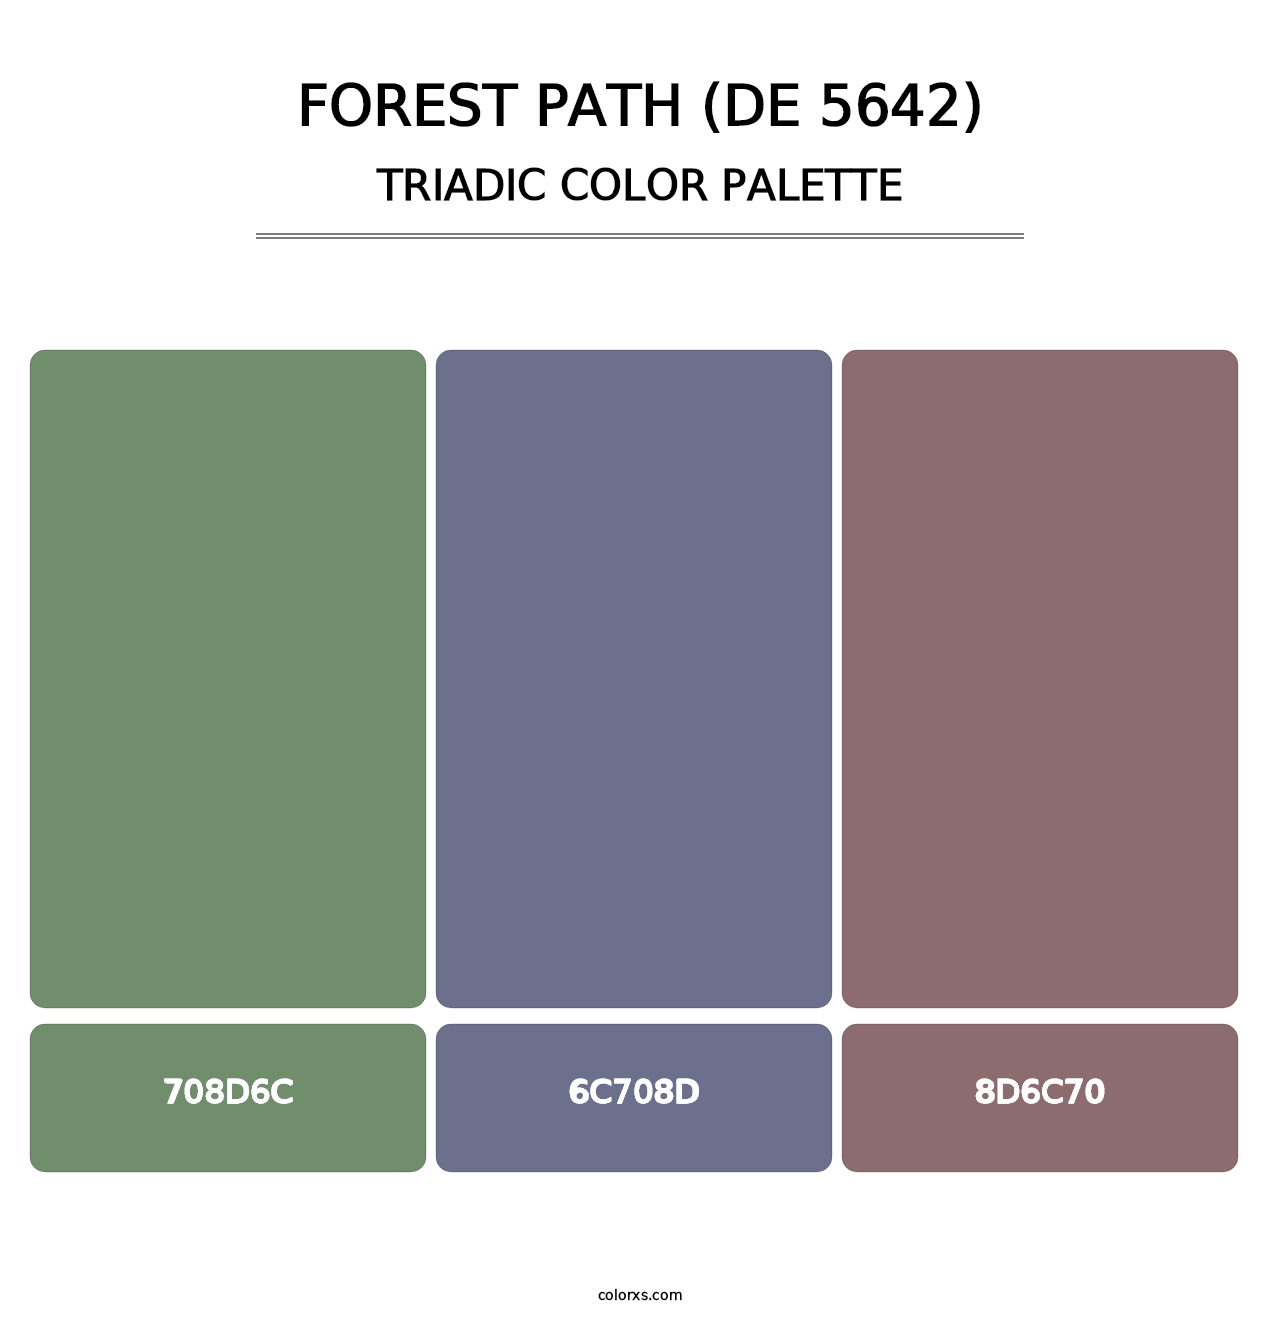 Forest Path (DE 5642) - Triadic Color Palette